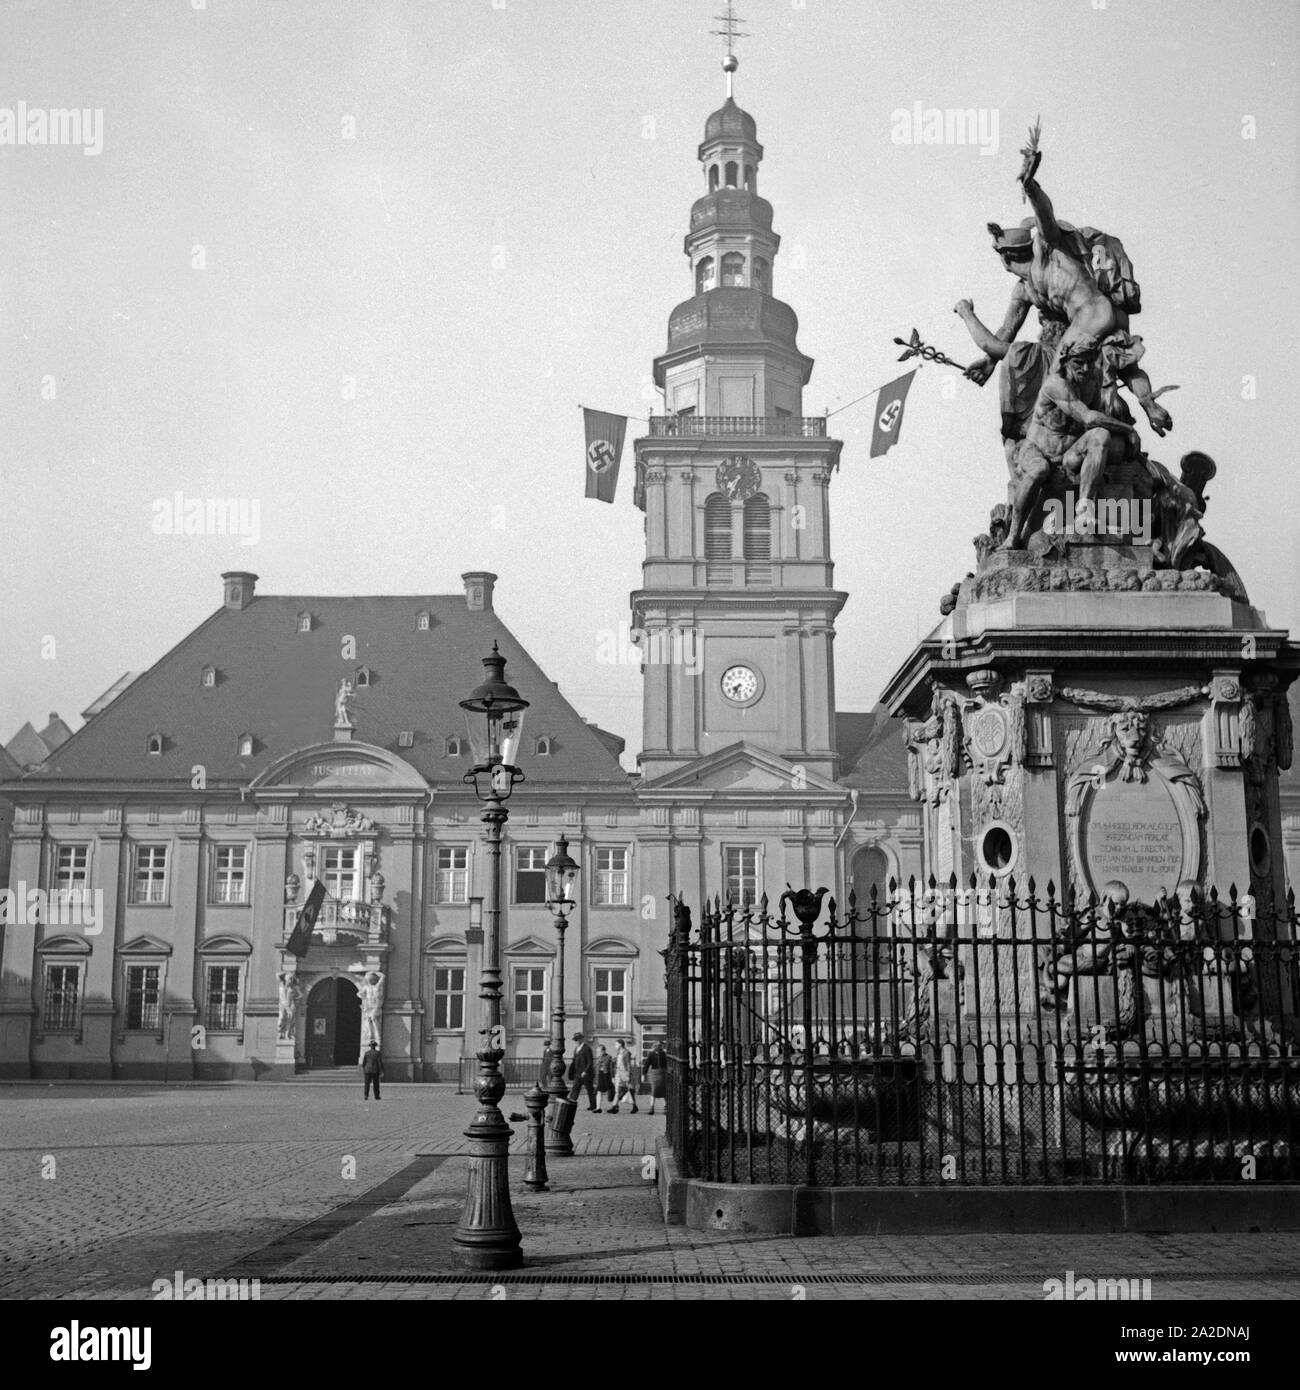 Das alte Rathaus auf dem Paradeplatz a Mannheim, Deutschland 1930er Jahre. Mannheim vecchio municipio in piazza Paradeplatz, Germania 1930s. Foto Stock